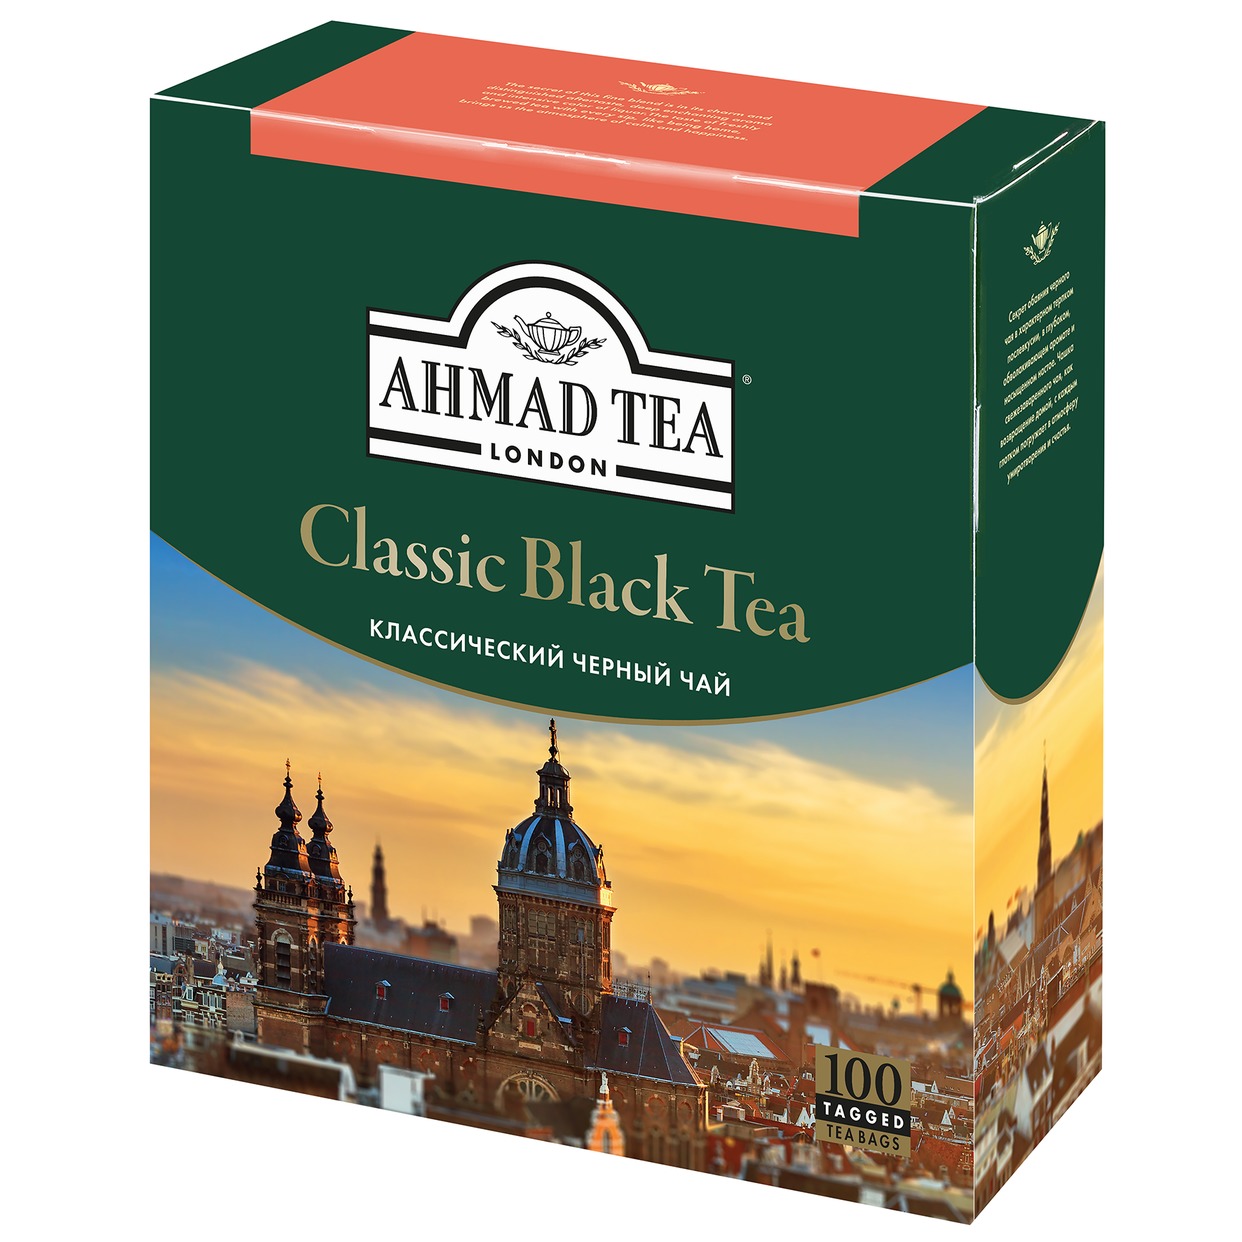 Чай Ahmad Tea, классический, черный, 100х2 г по акции в Пятерочке